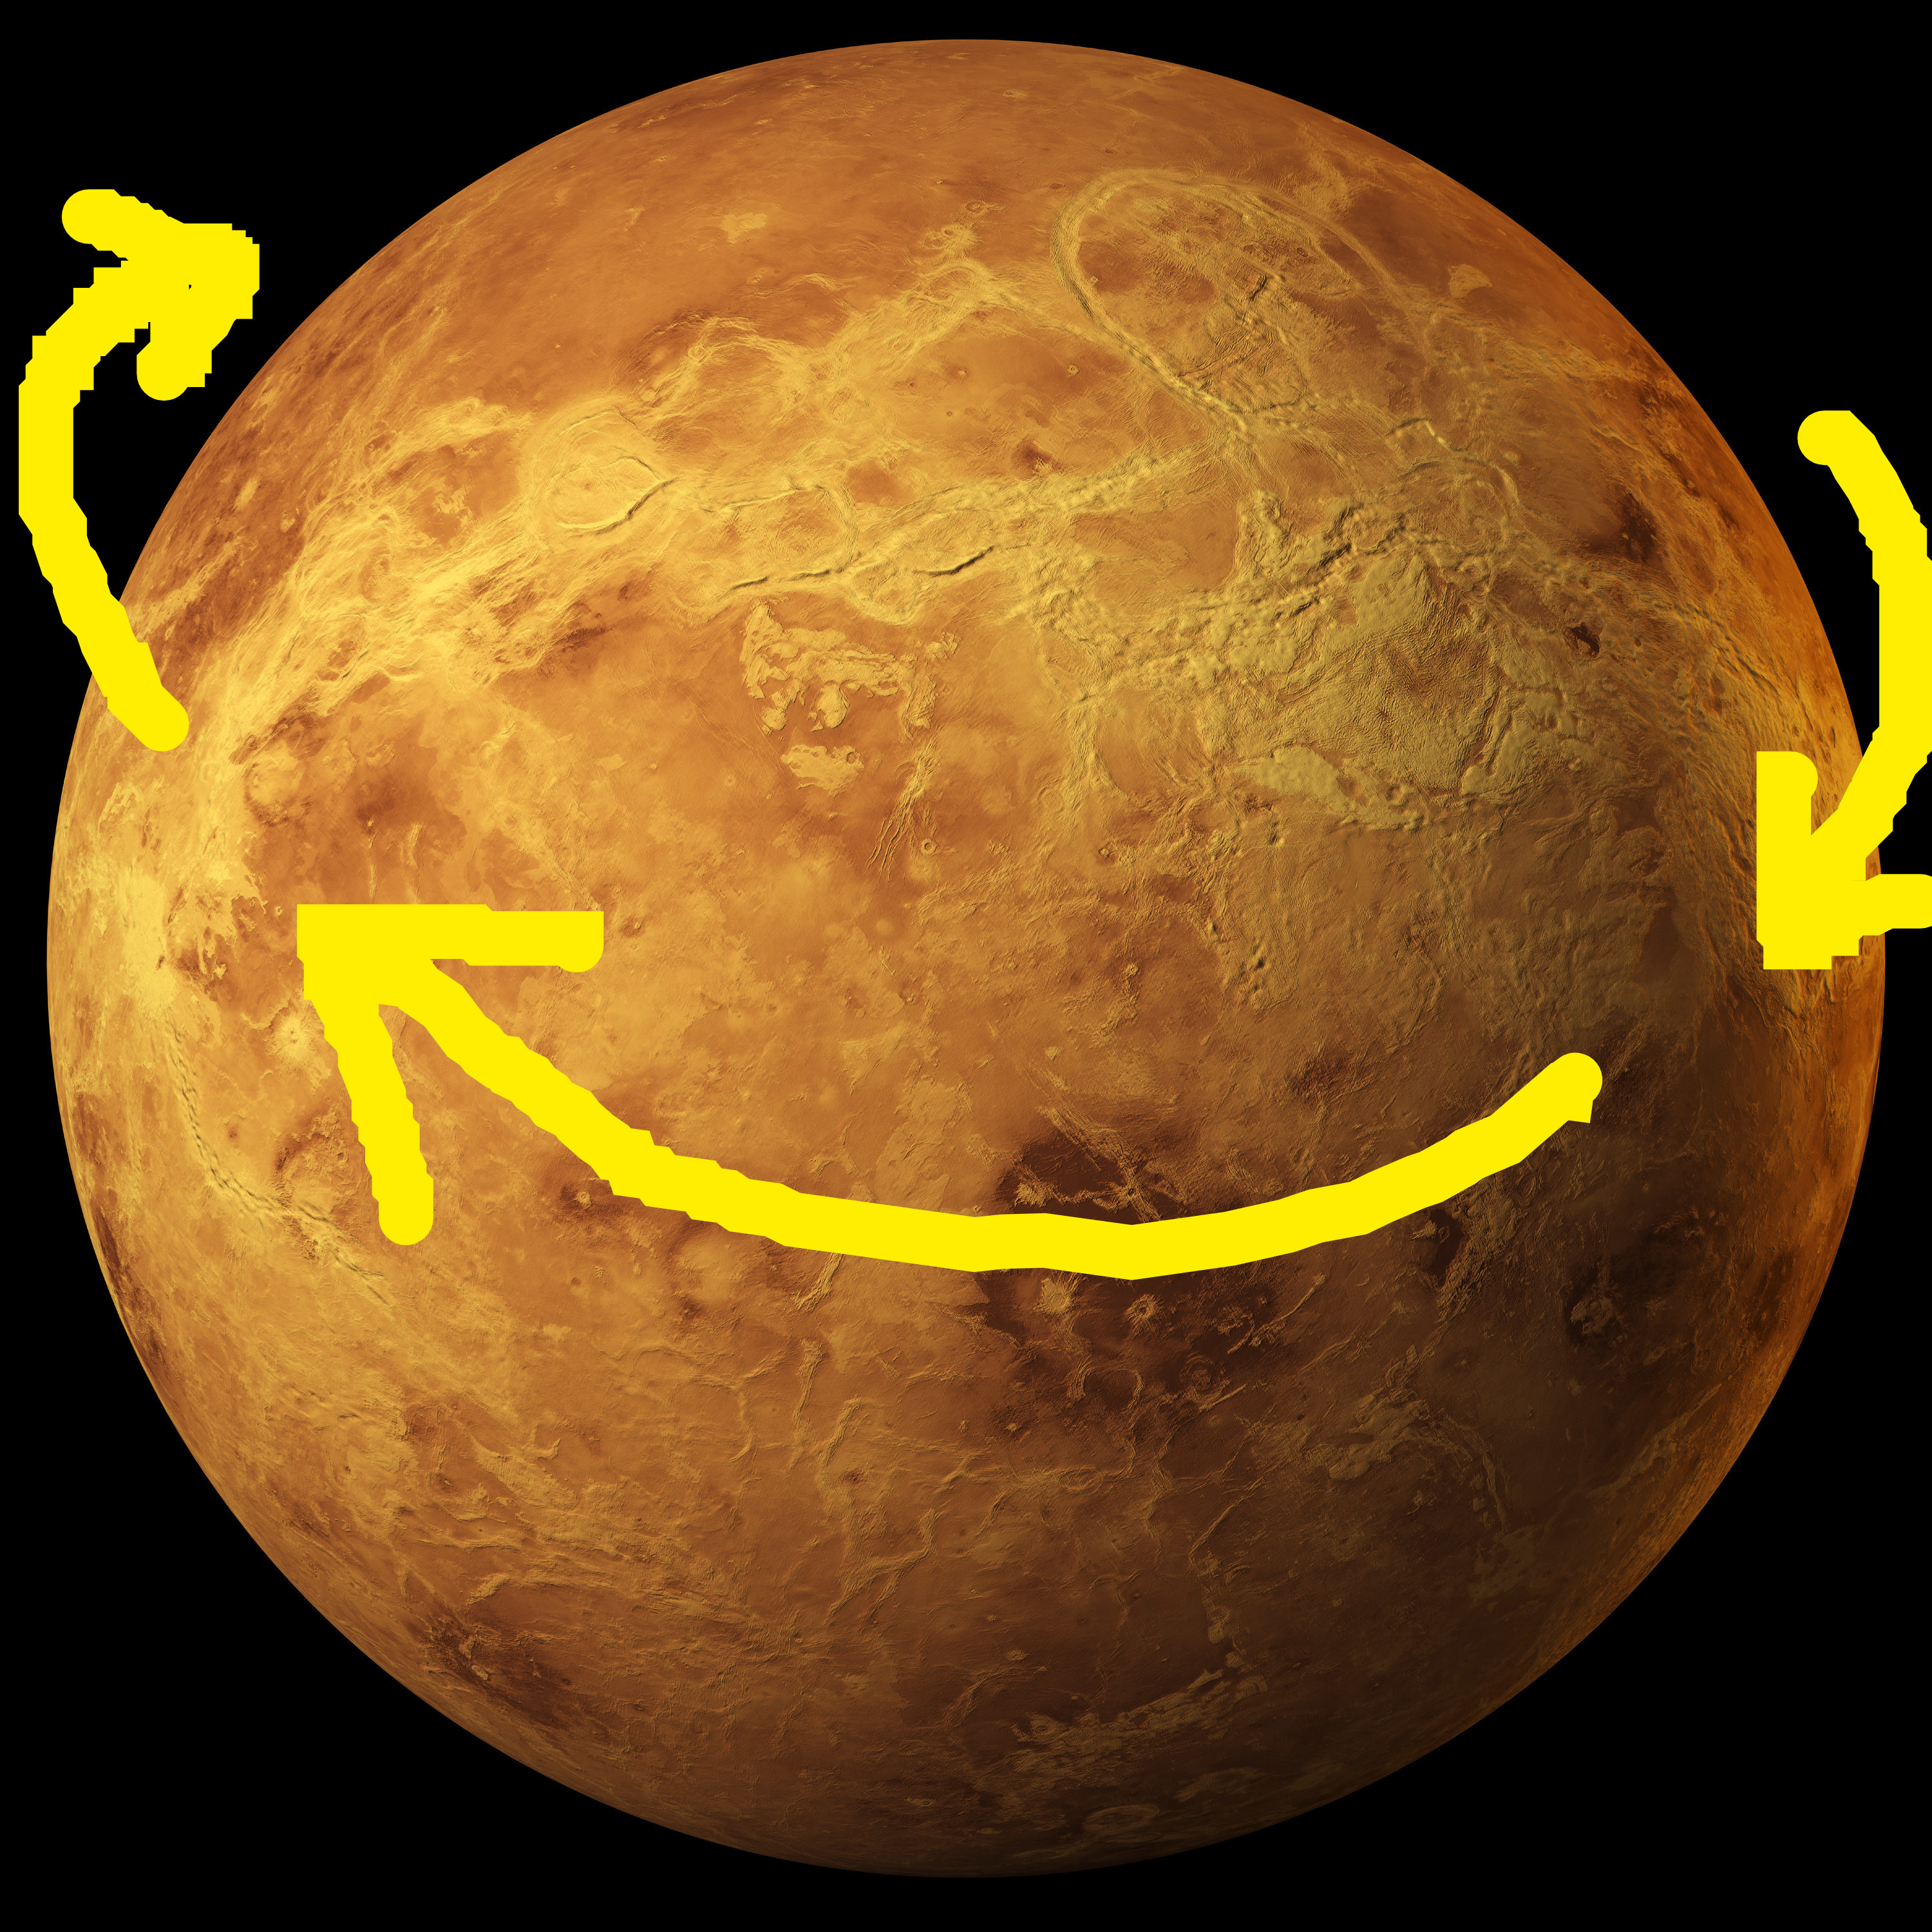 Arrows pointing clockwise around Venus